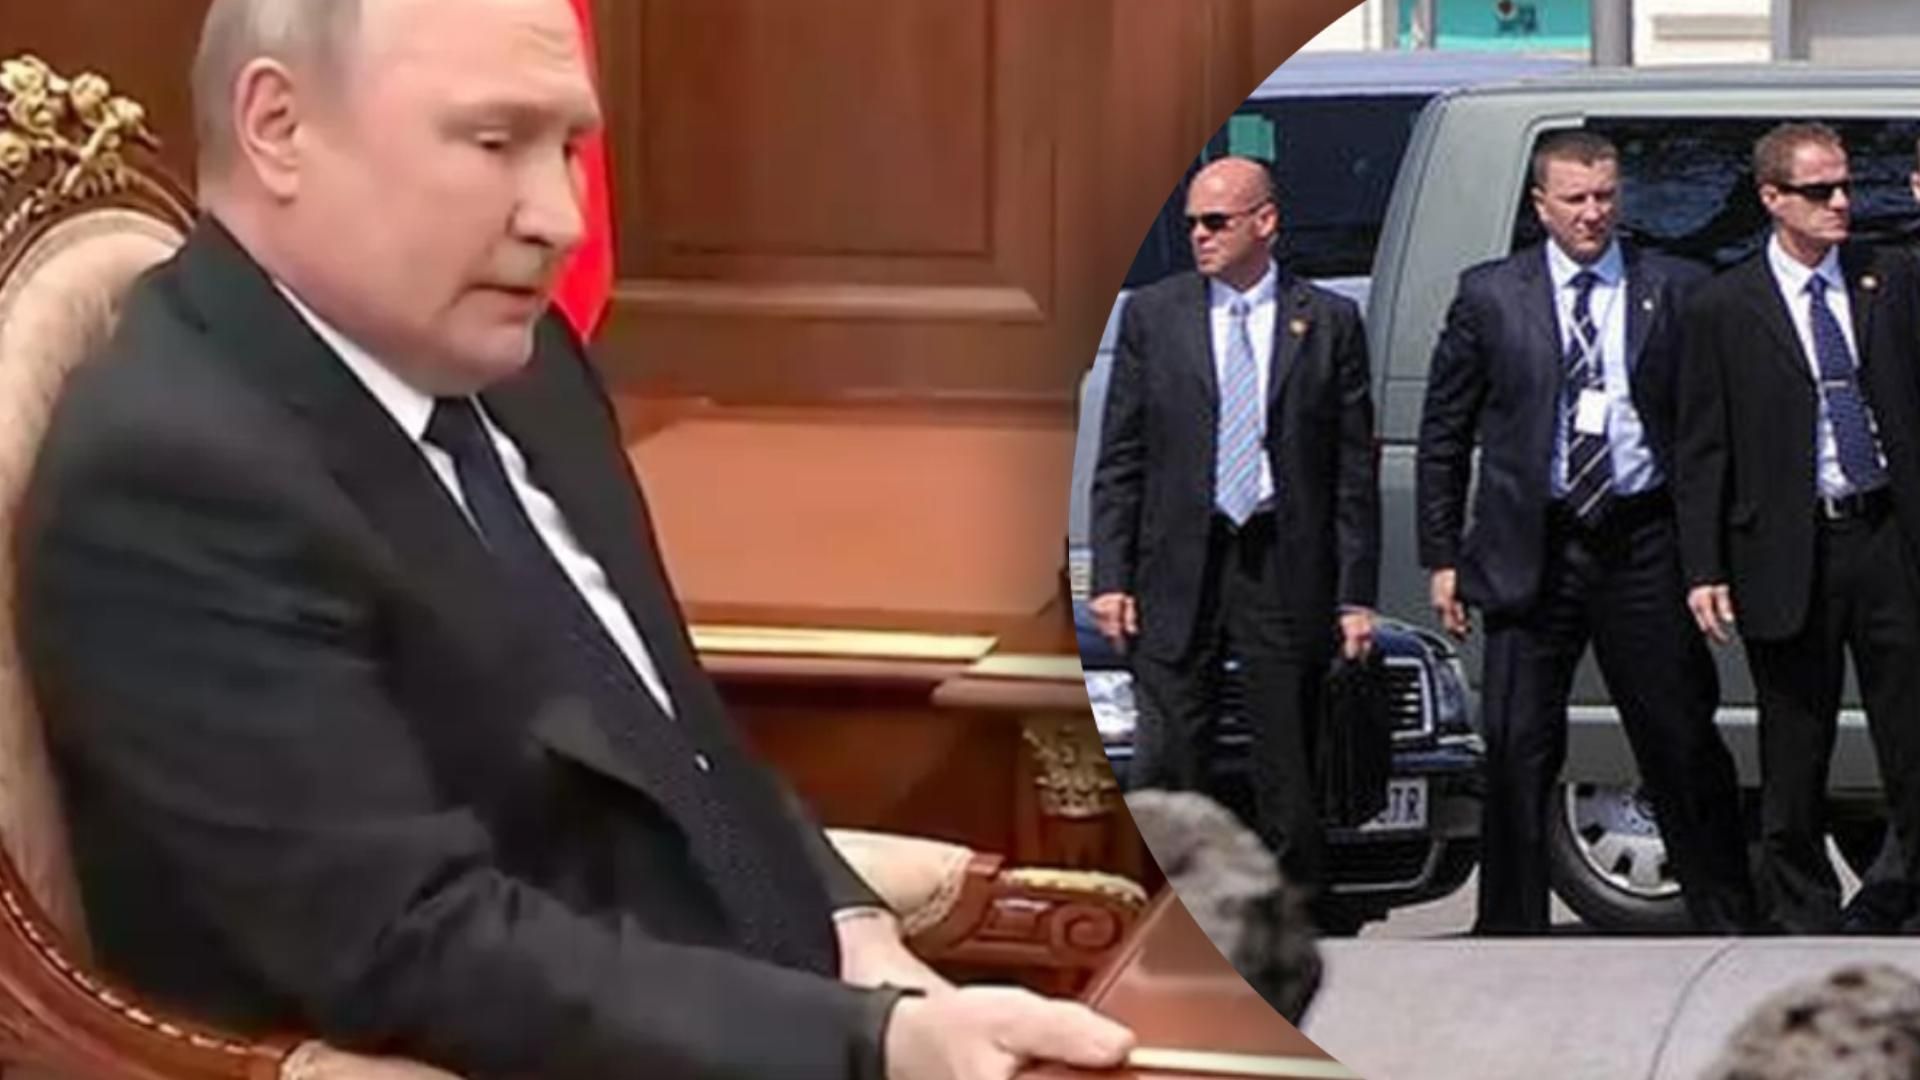 Чтобы сходить в туалет за границей, Путин берет спецохранника: в СМИ объяснили, для чего это делают